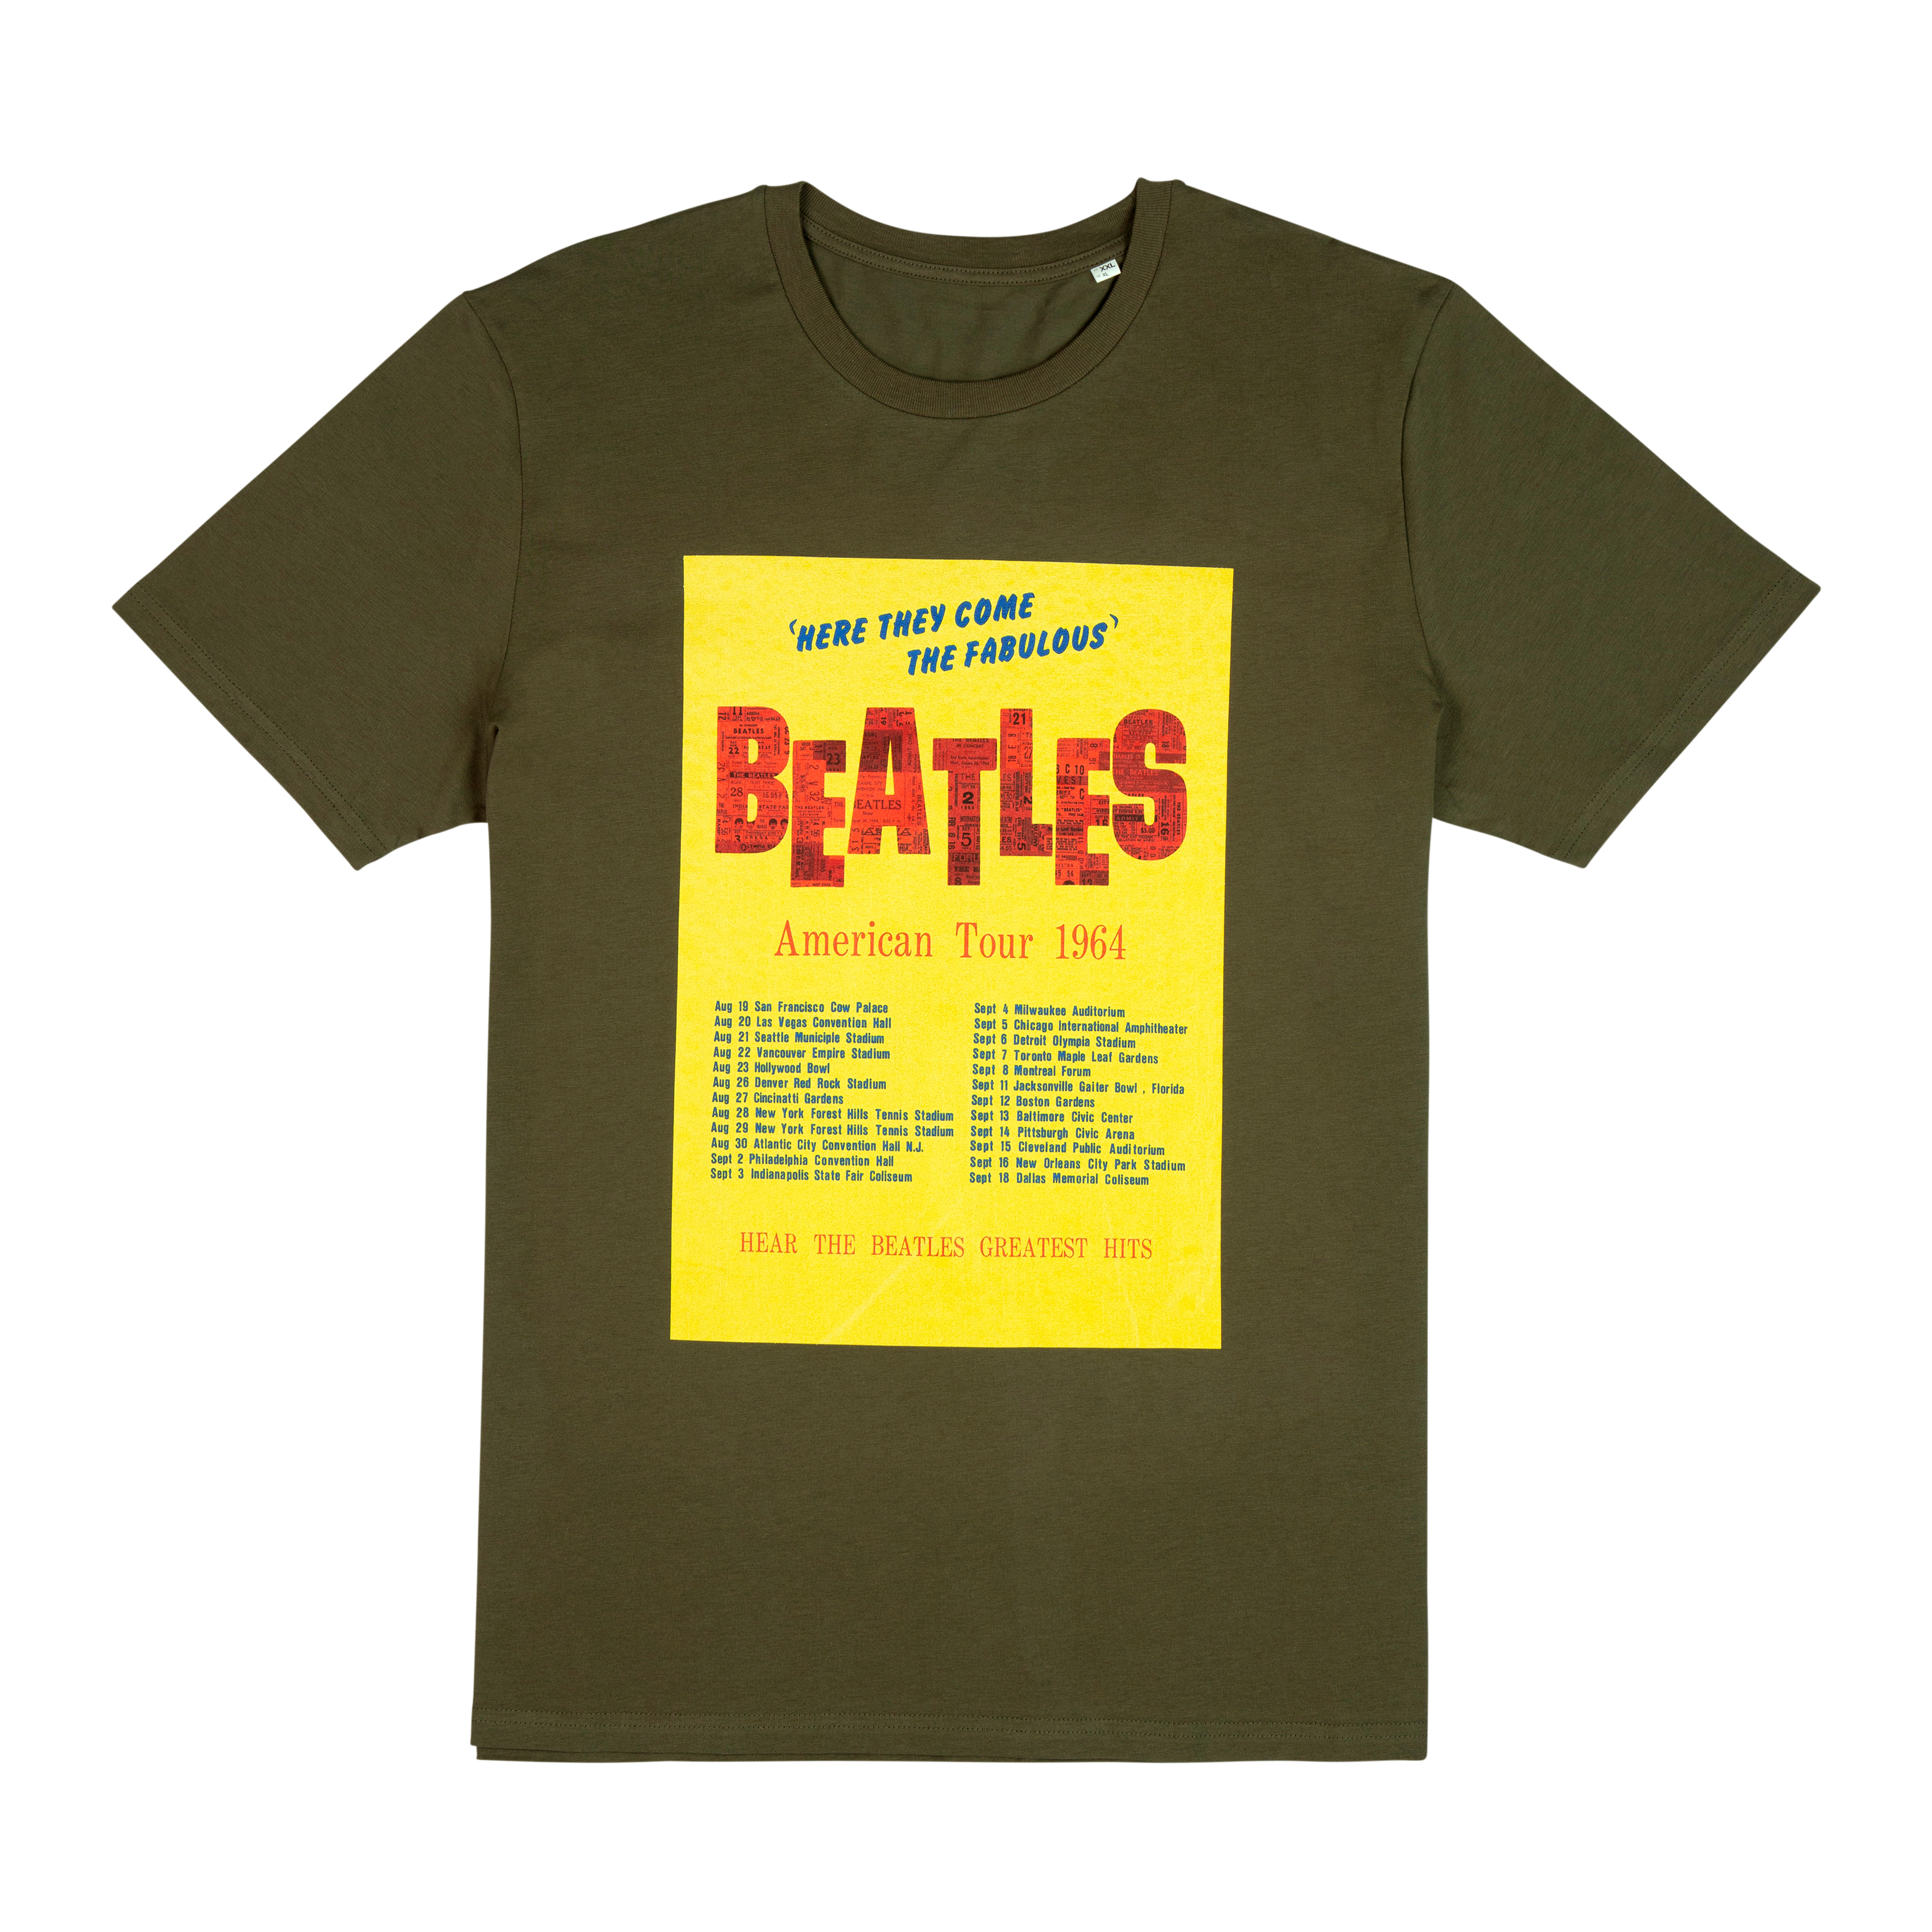 The Beatles - American Tour 1964 Khaki T-shirt